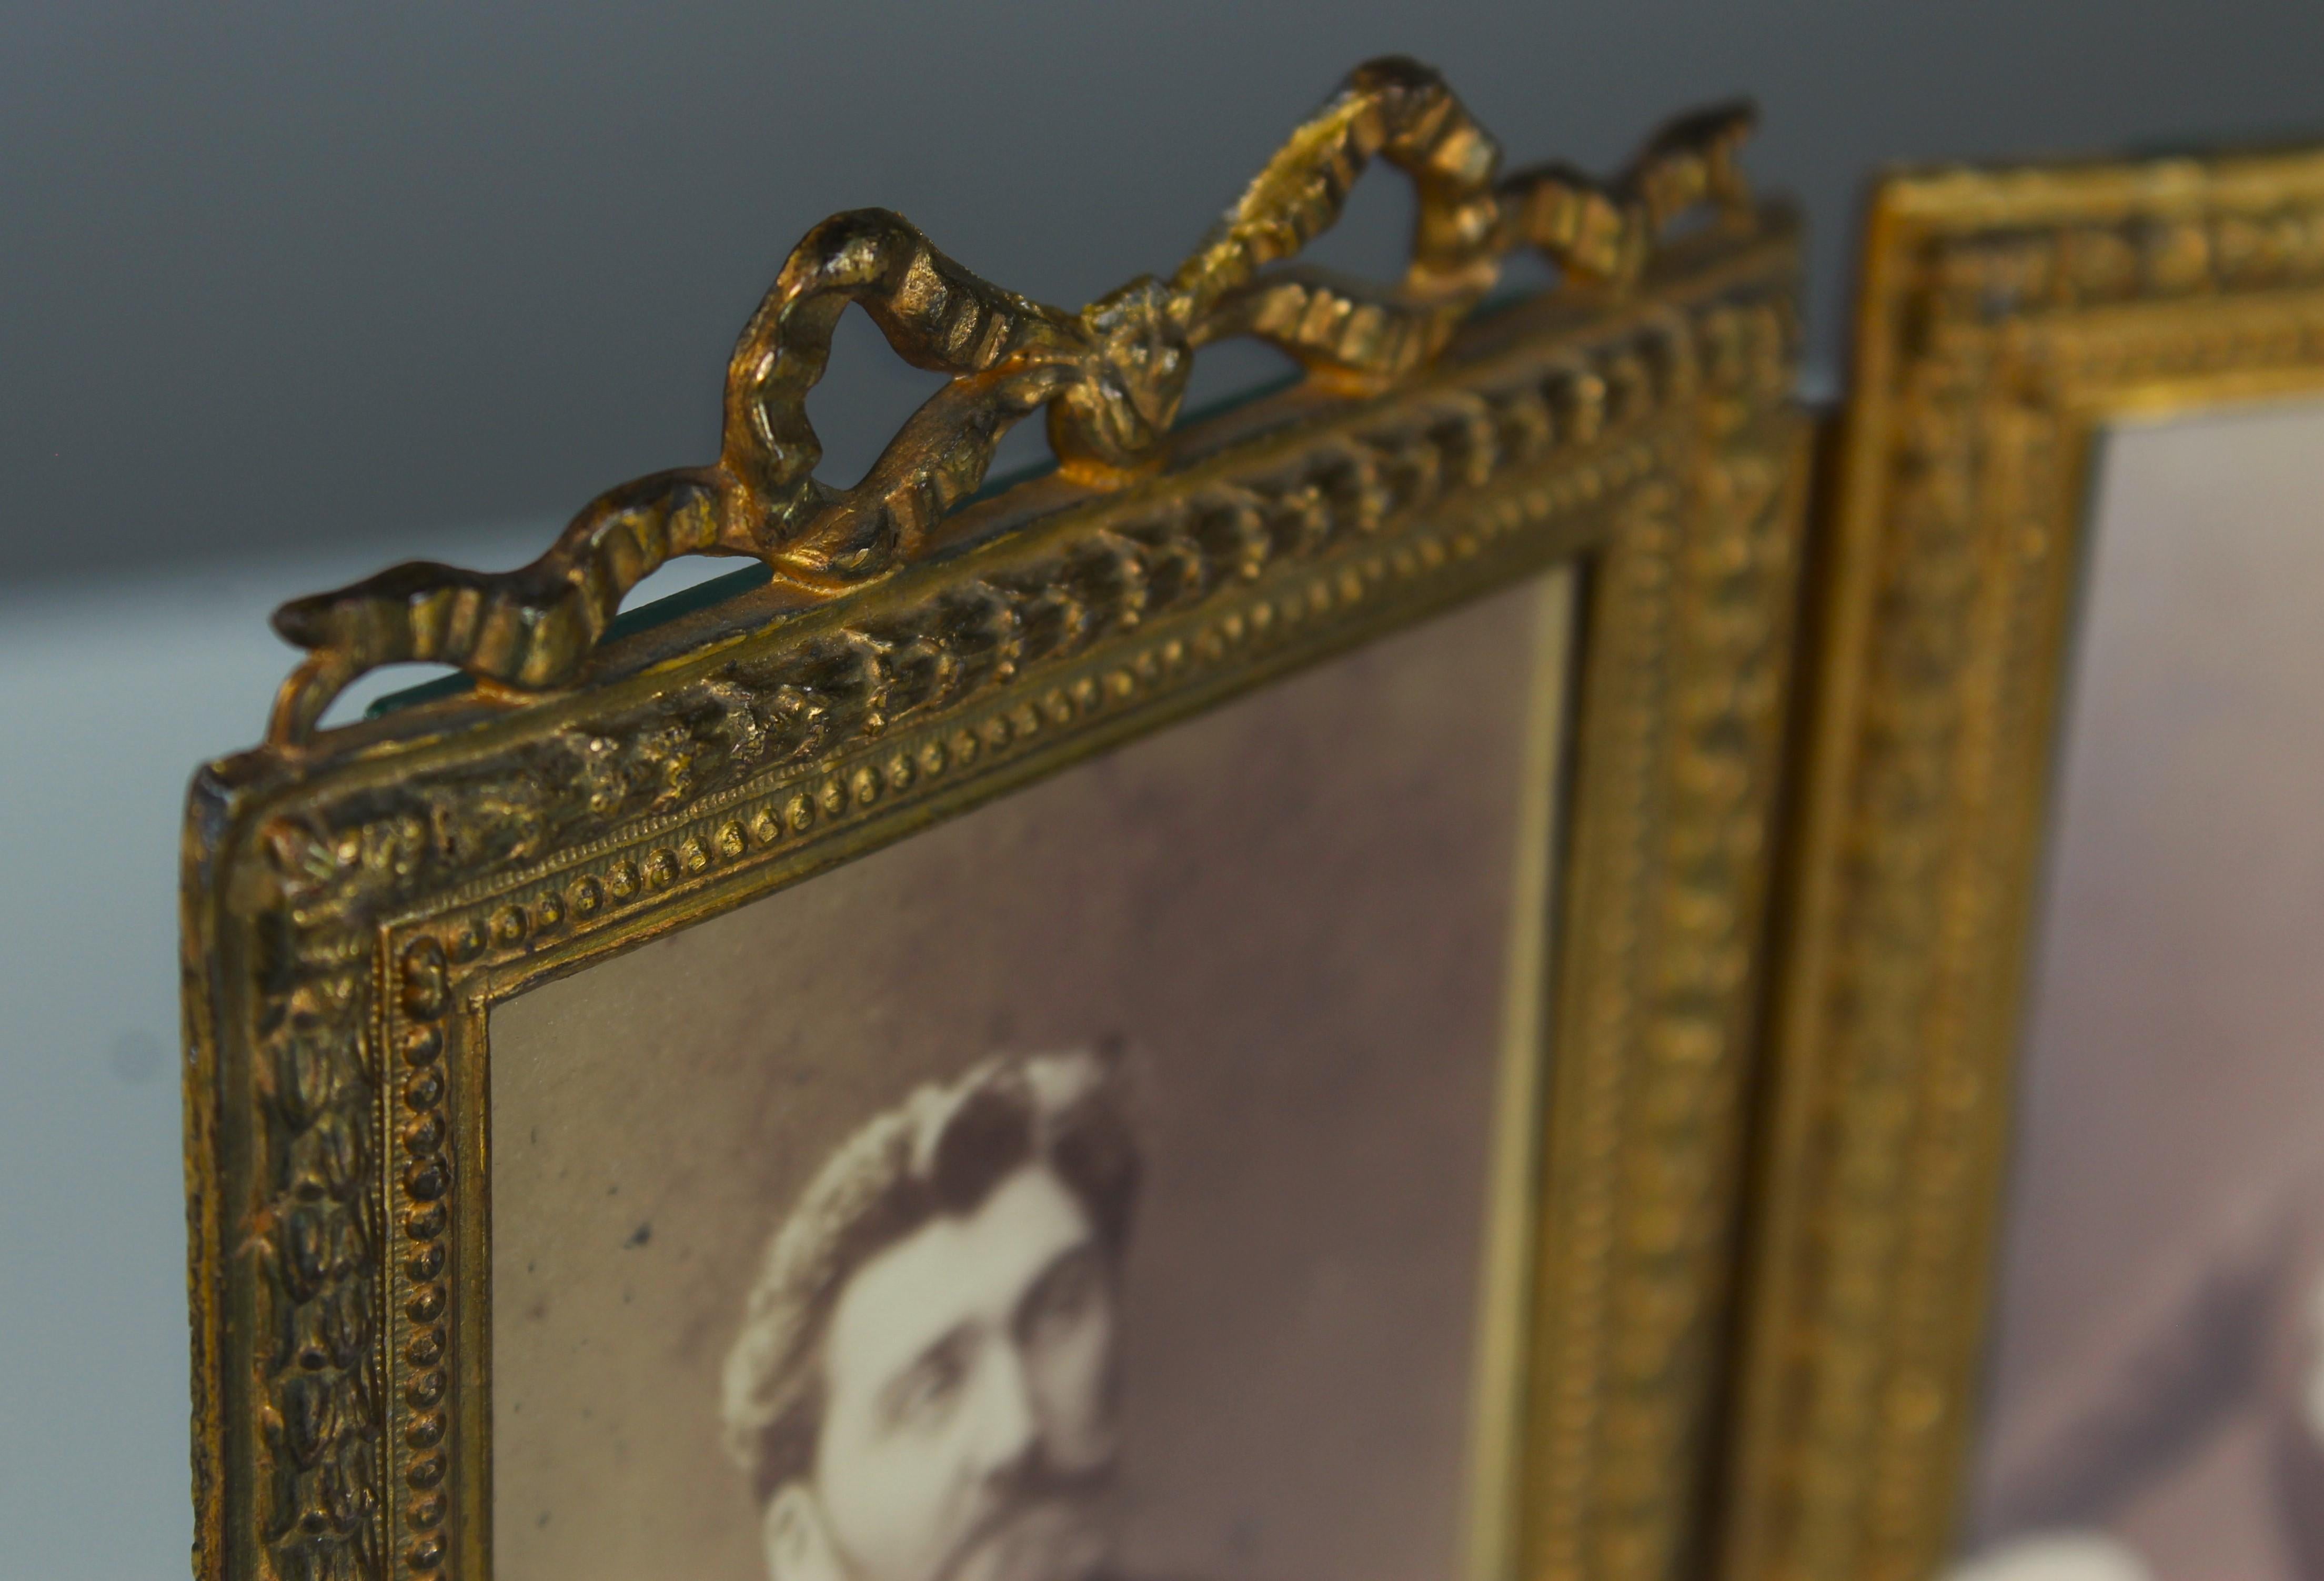 Magnifique cadre photo ancien de France, vers 1880.
Trois photos peuvent être insérées dans chacune d'entre elles (9 x 6 cm).
Joli état de propreté avec des signes normaux d'utilisation liée à l'âge.

